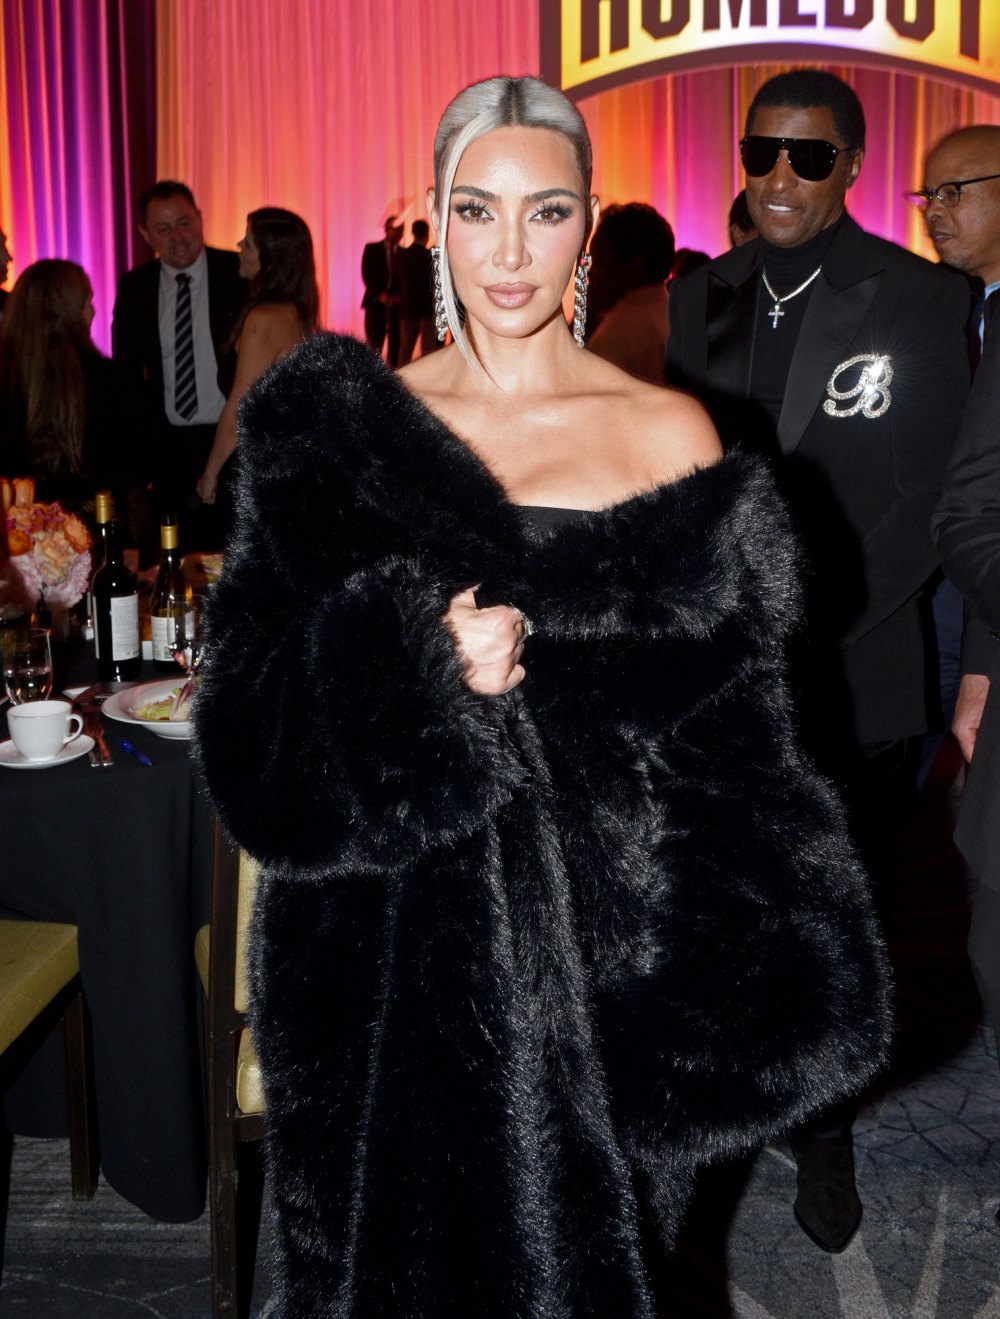 Kim Kardashian Debuts Pastel Pink Pixie Cut Days After Bleaching Hair Platinum Blonde